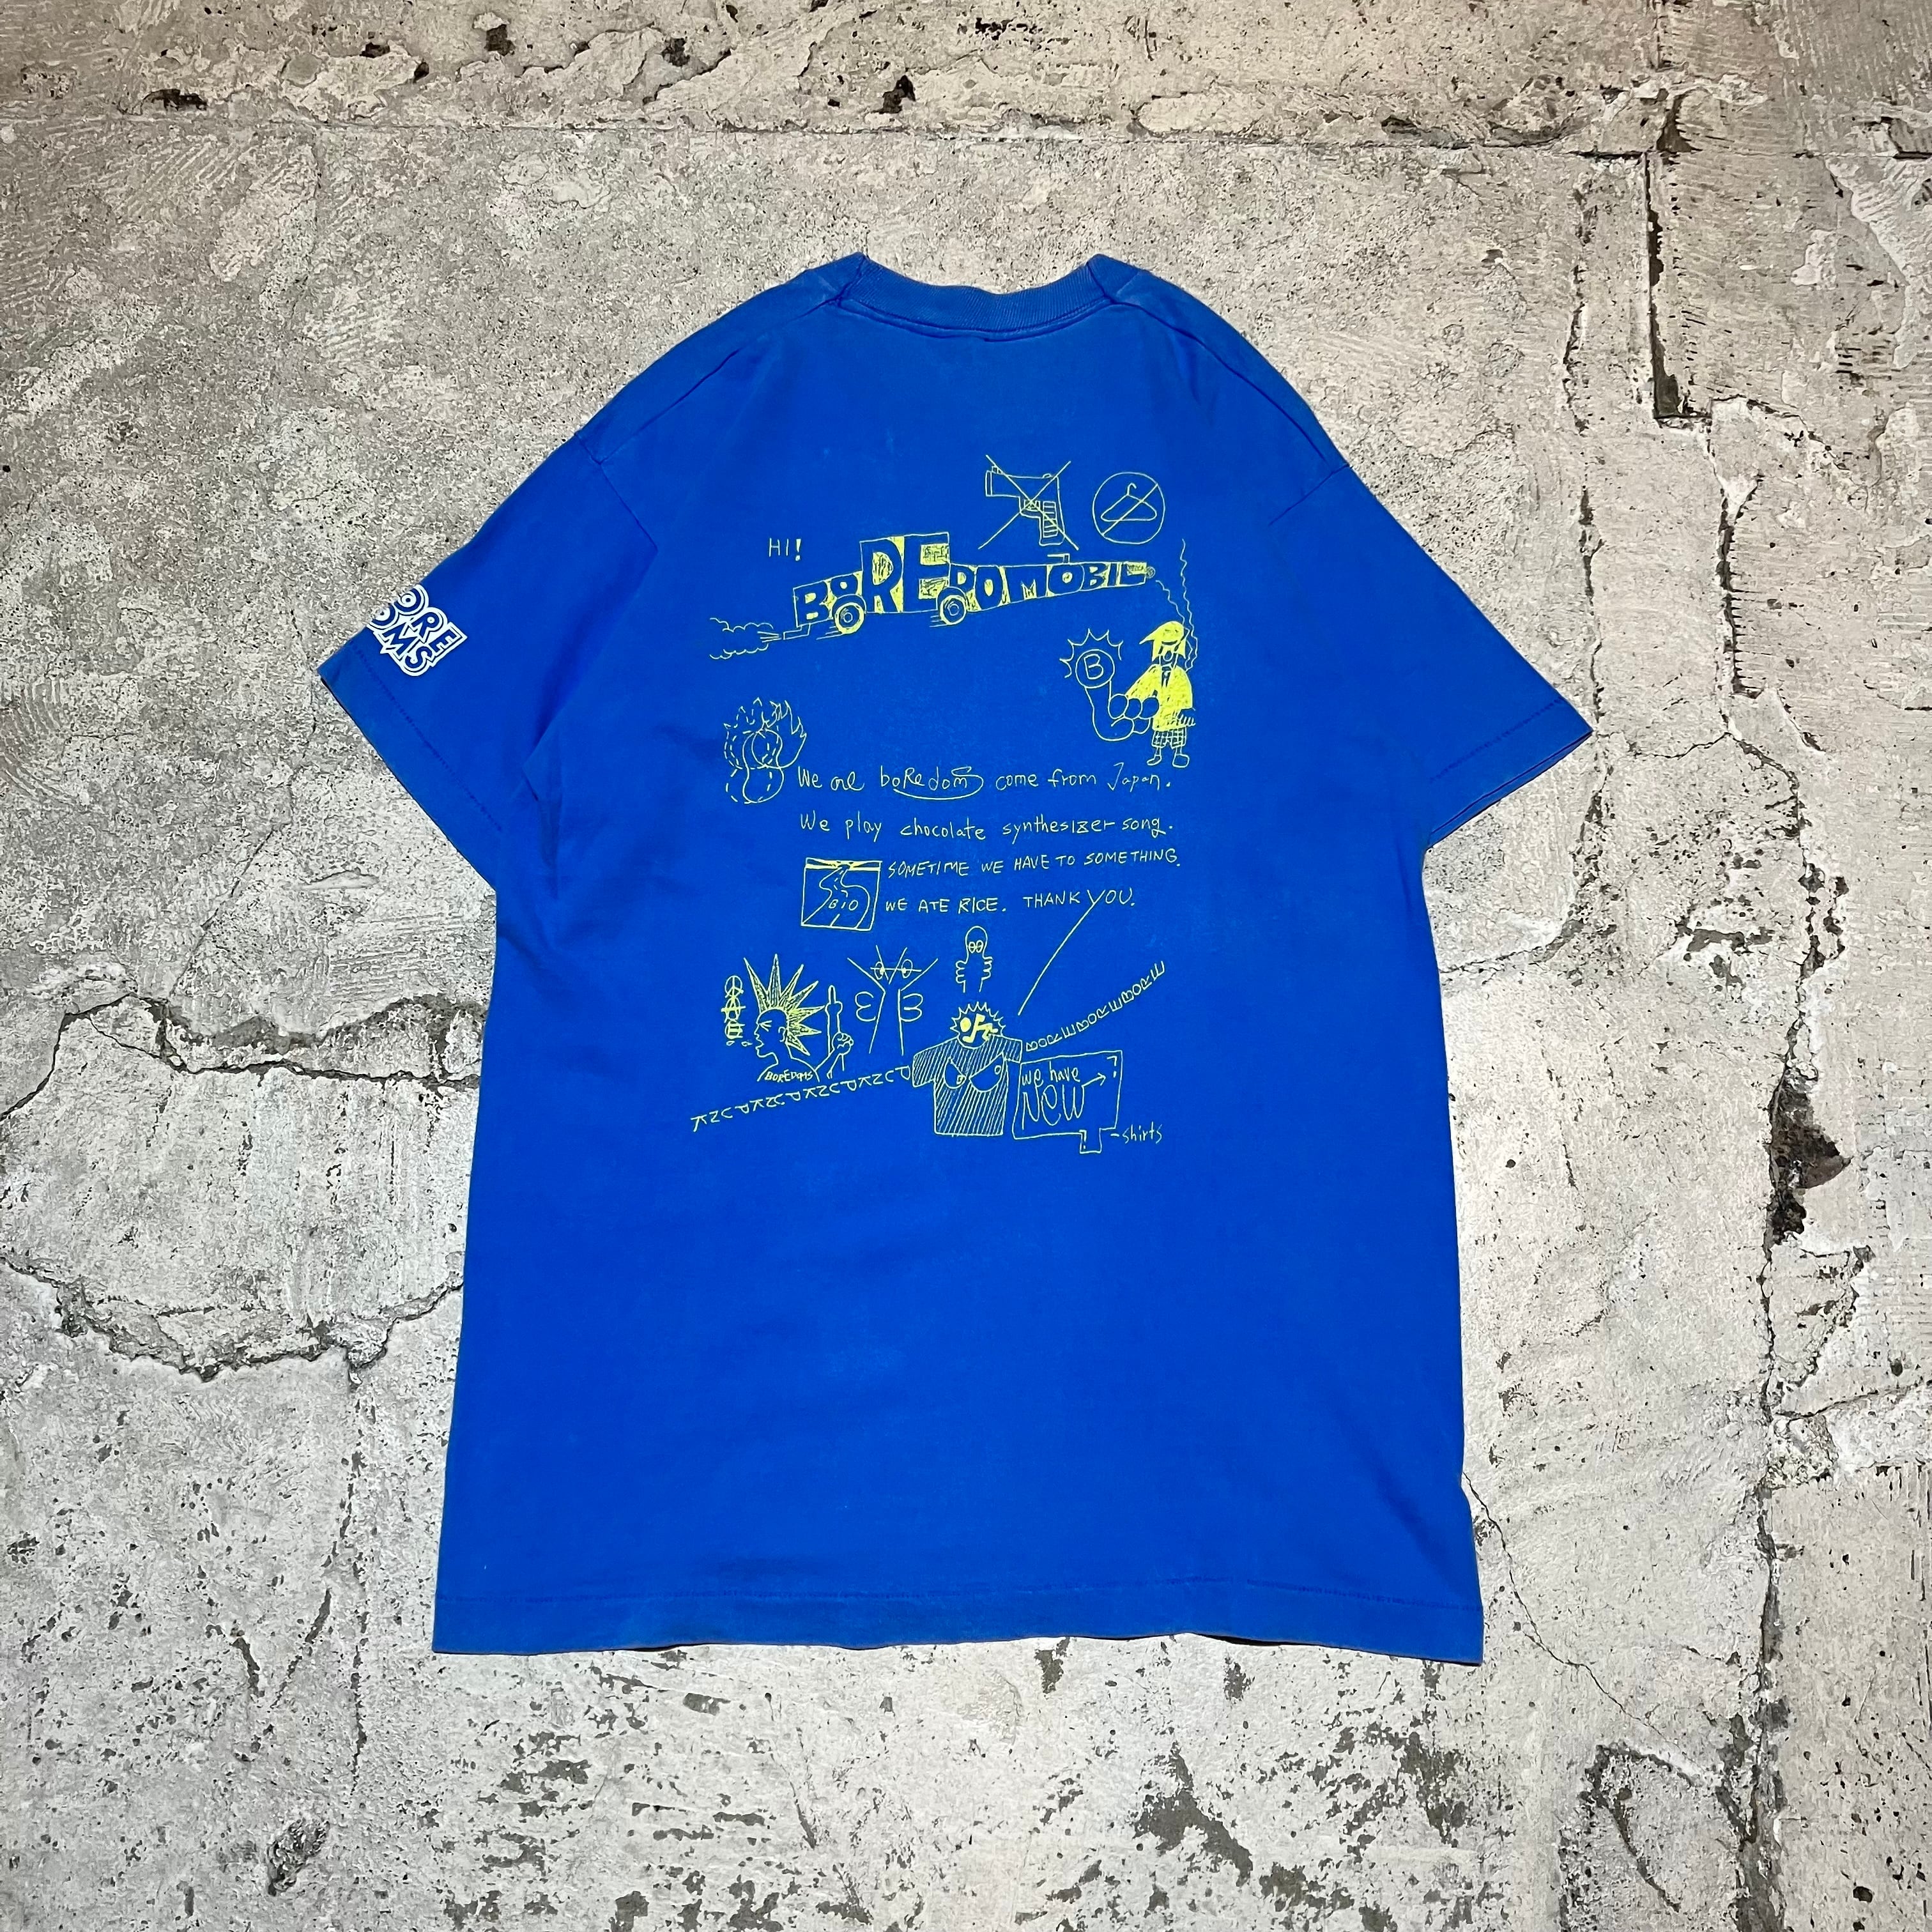 BOREDOMSボアダムス 90's-00's バンドTシャツ【M】【MTSA71848】